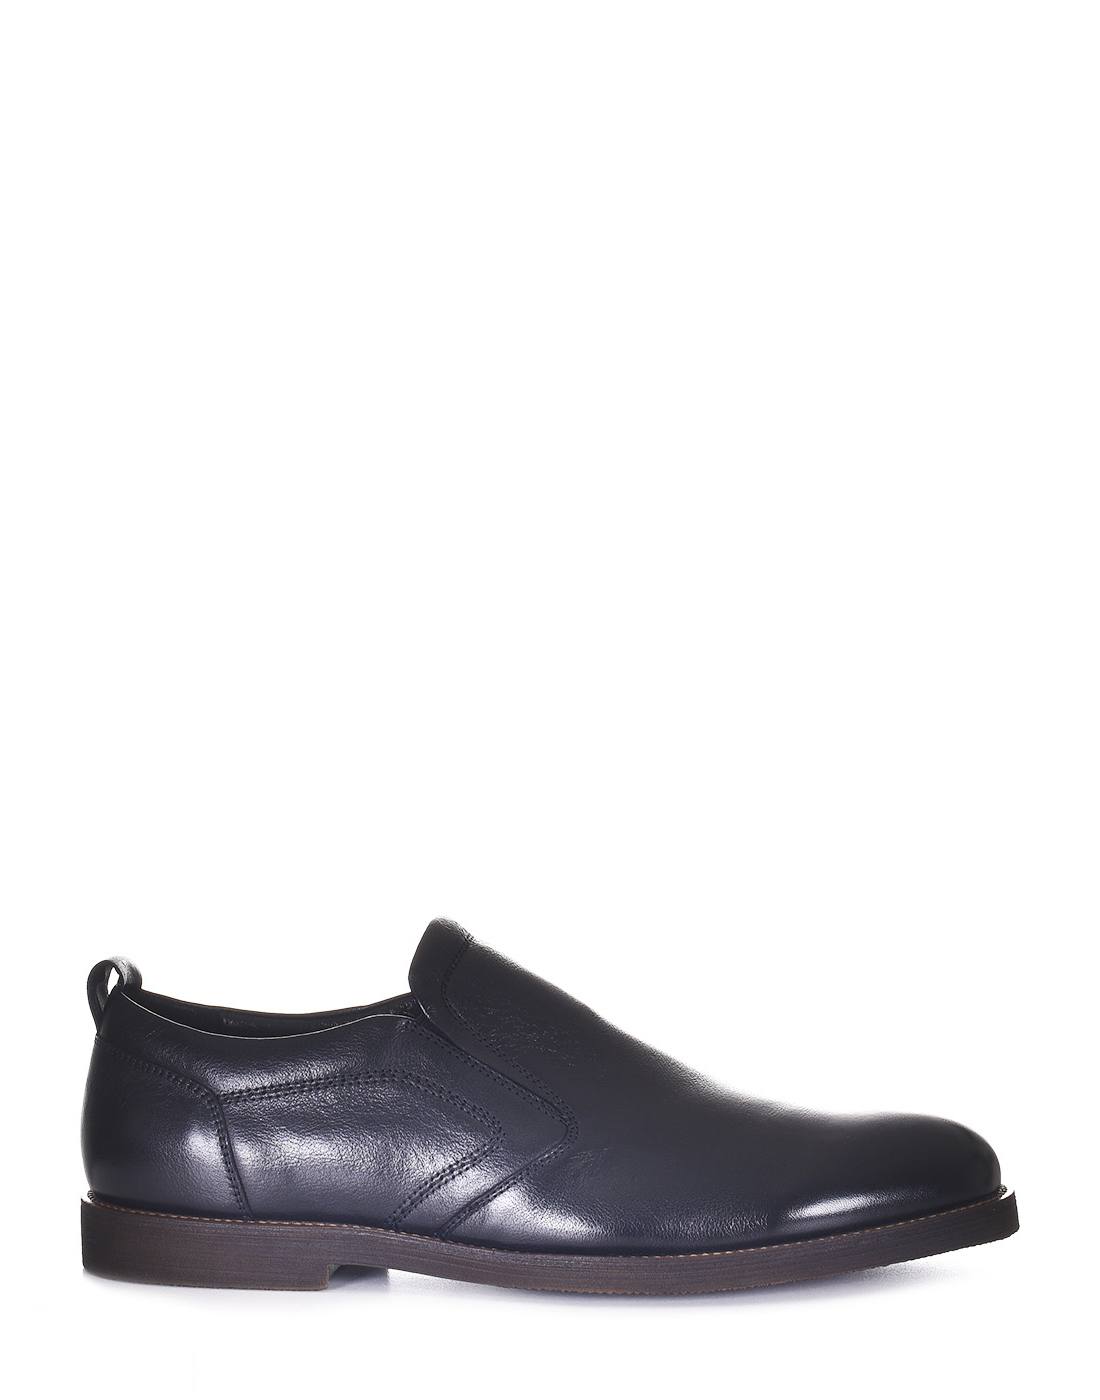 Туфли мужские ROSCOTE X023-9-T3456 черные 40 RU